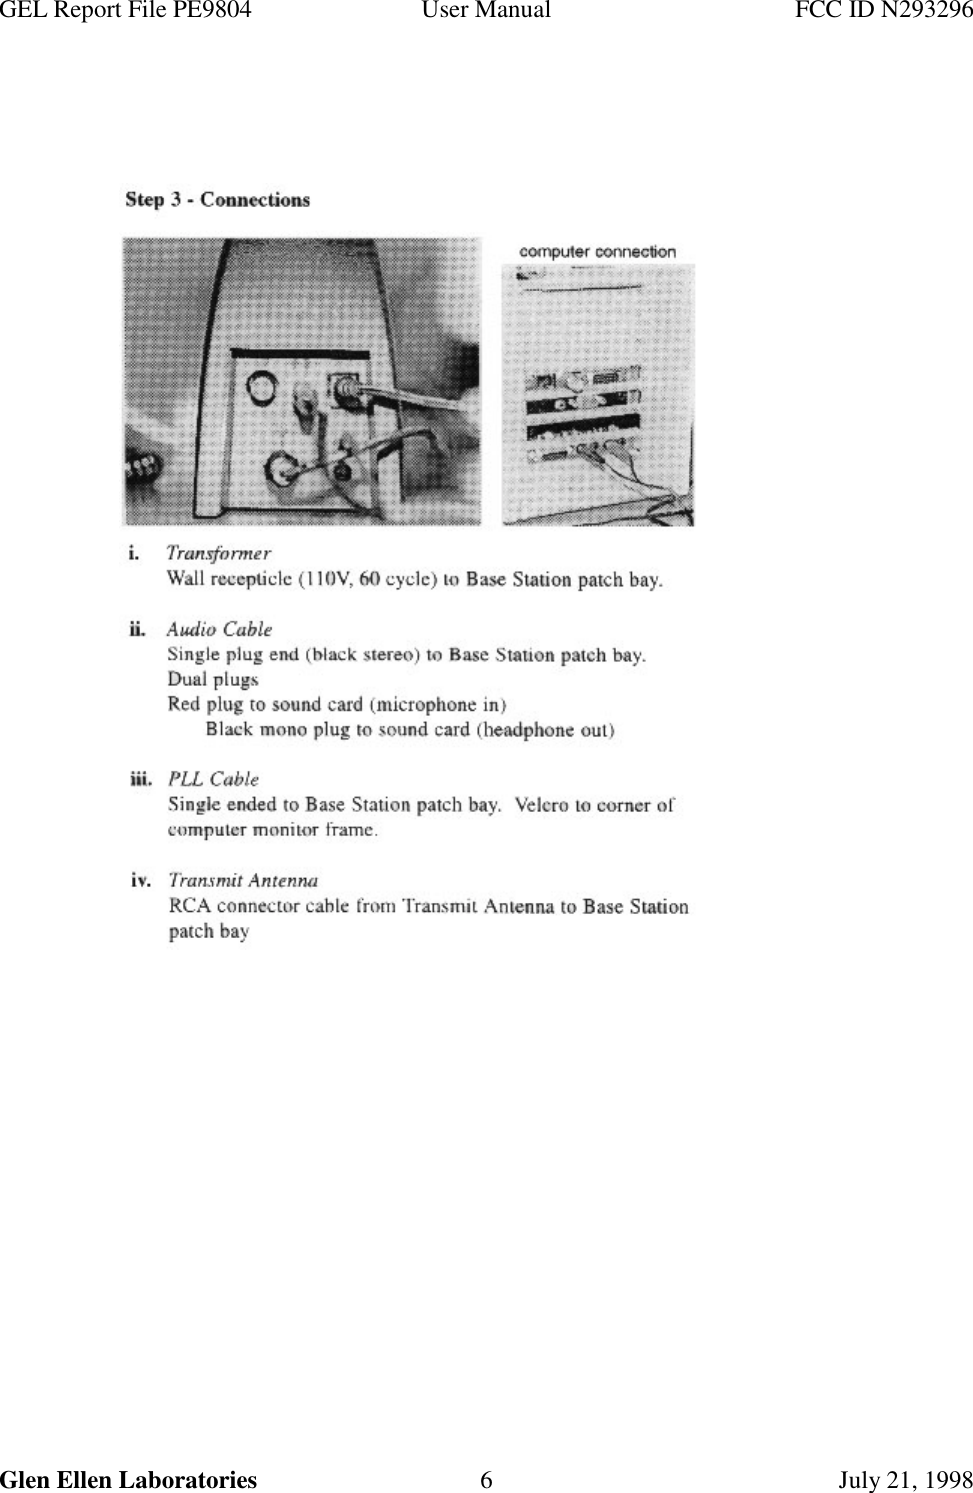 GEL Report File PE9804 User Manual FCC ID N293296Glen Ellen Laboratories 6 July 21, 1998